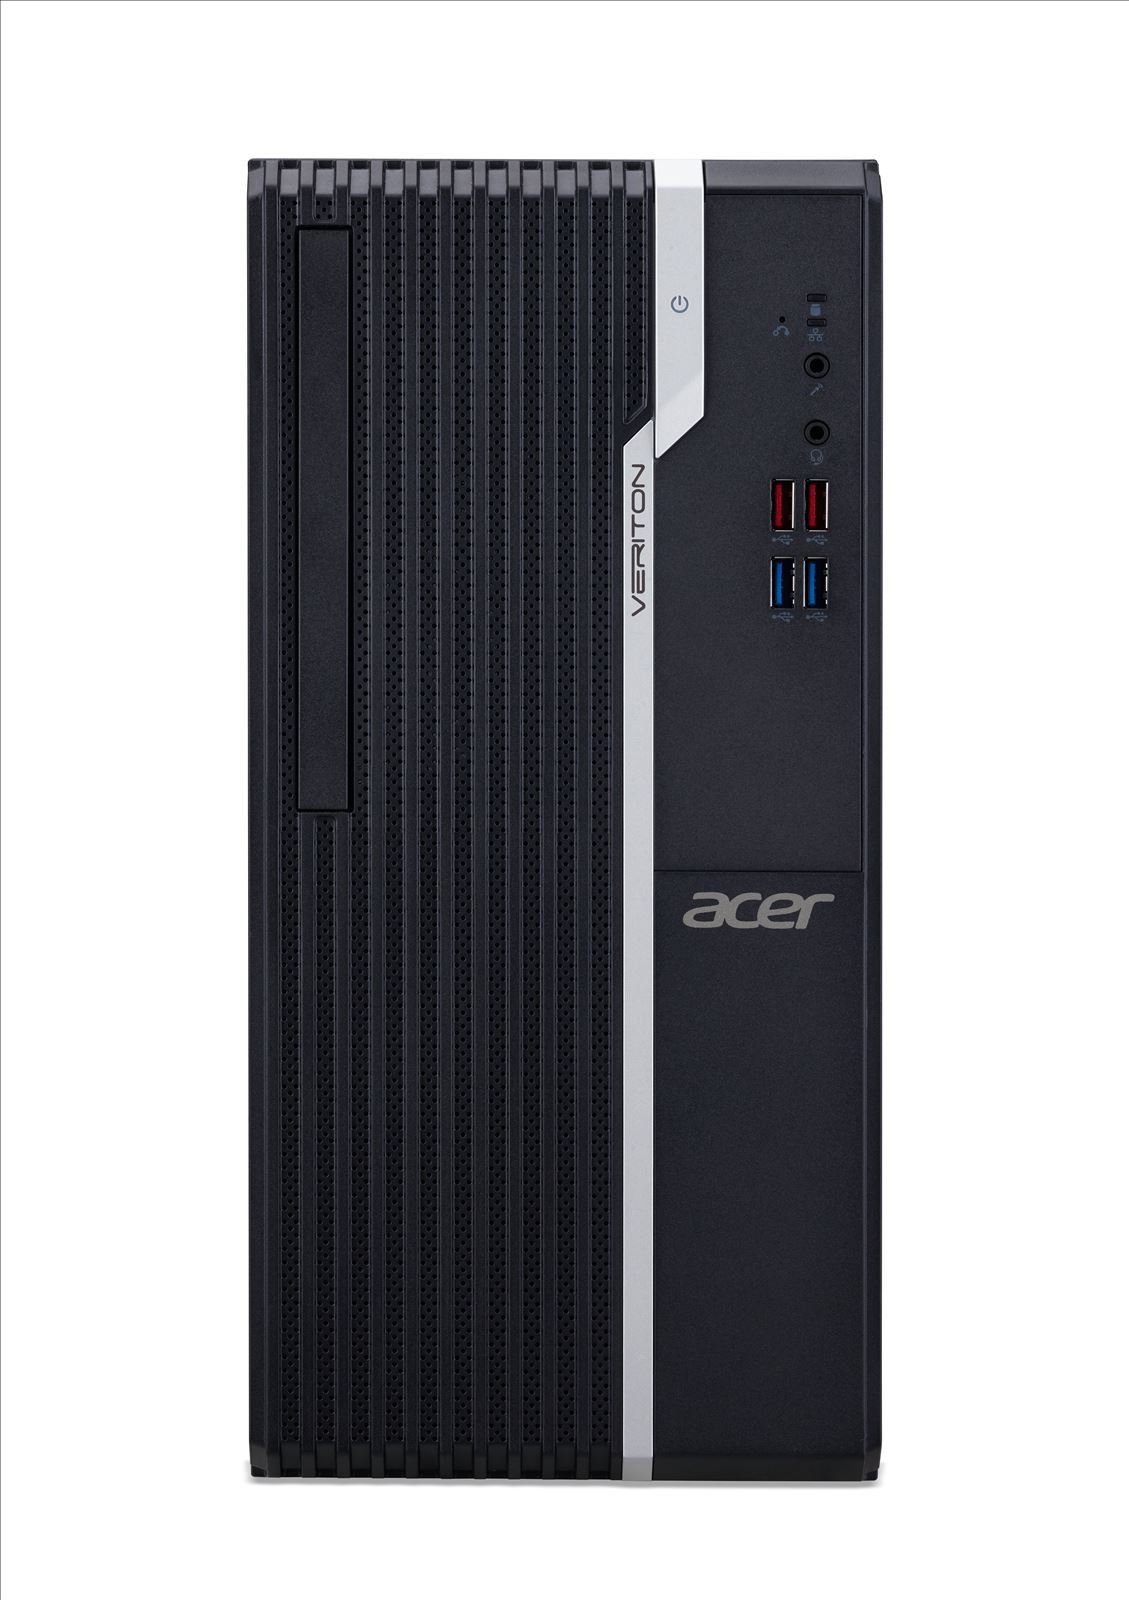 Acer Veriton S2680G DDR4-SDRAM i5-11400 Desktop Intel® Core™ i5 di undicesima generazione 8 GB 512 GB SSD Windows 10 Pro PC Nero